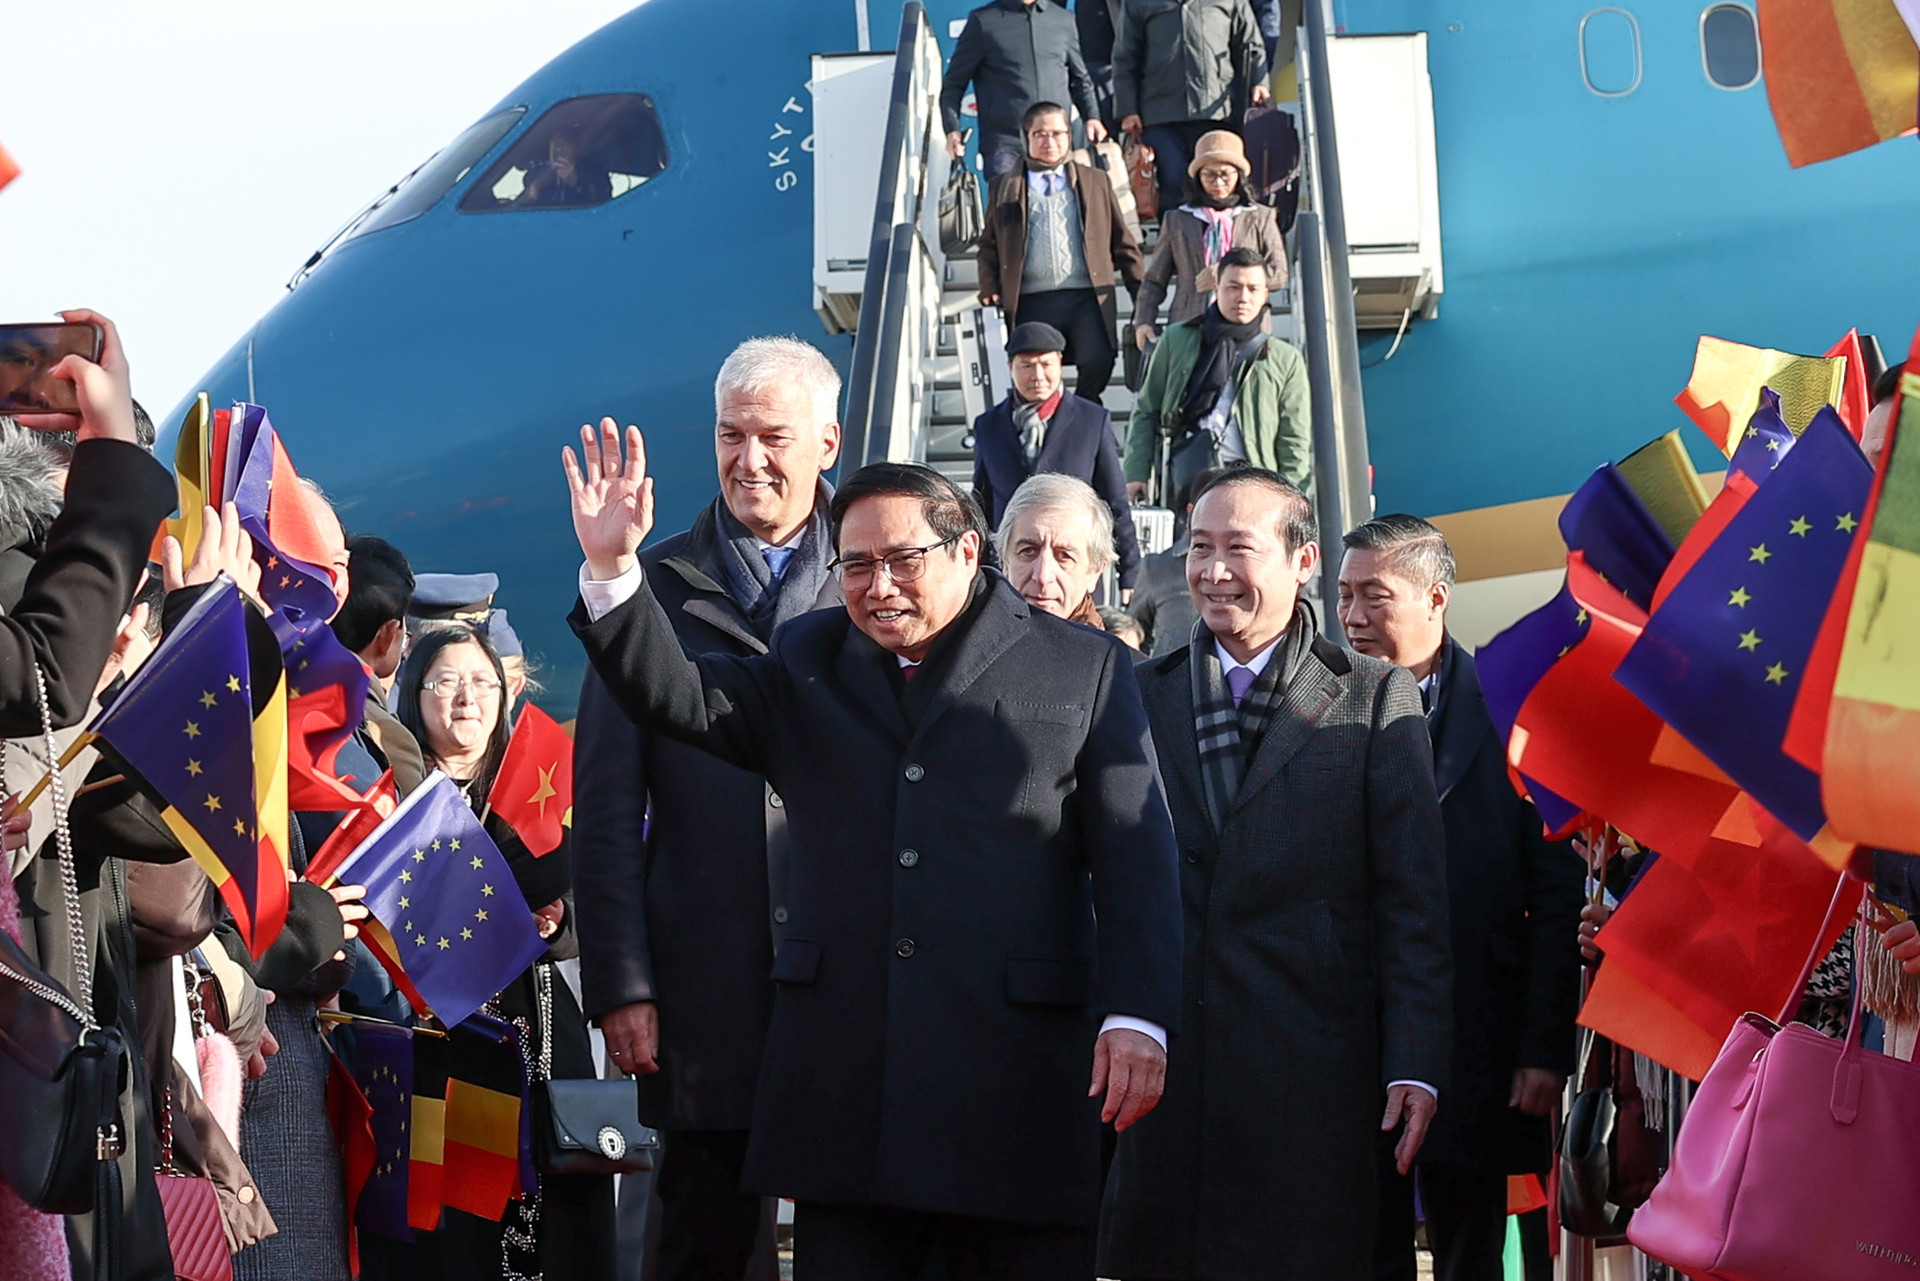 Thủ tướng bắt đầu chuyến thăm chính thức Vương quốc Bỉ và tham dự Hội nghị cấp cao ASEAN-EU - Ảnh 1.